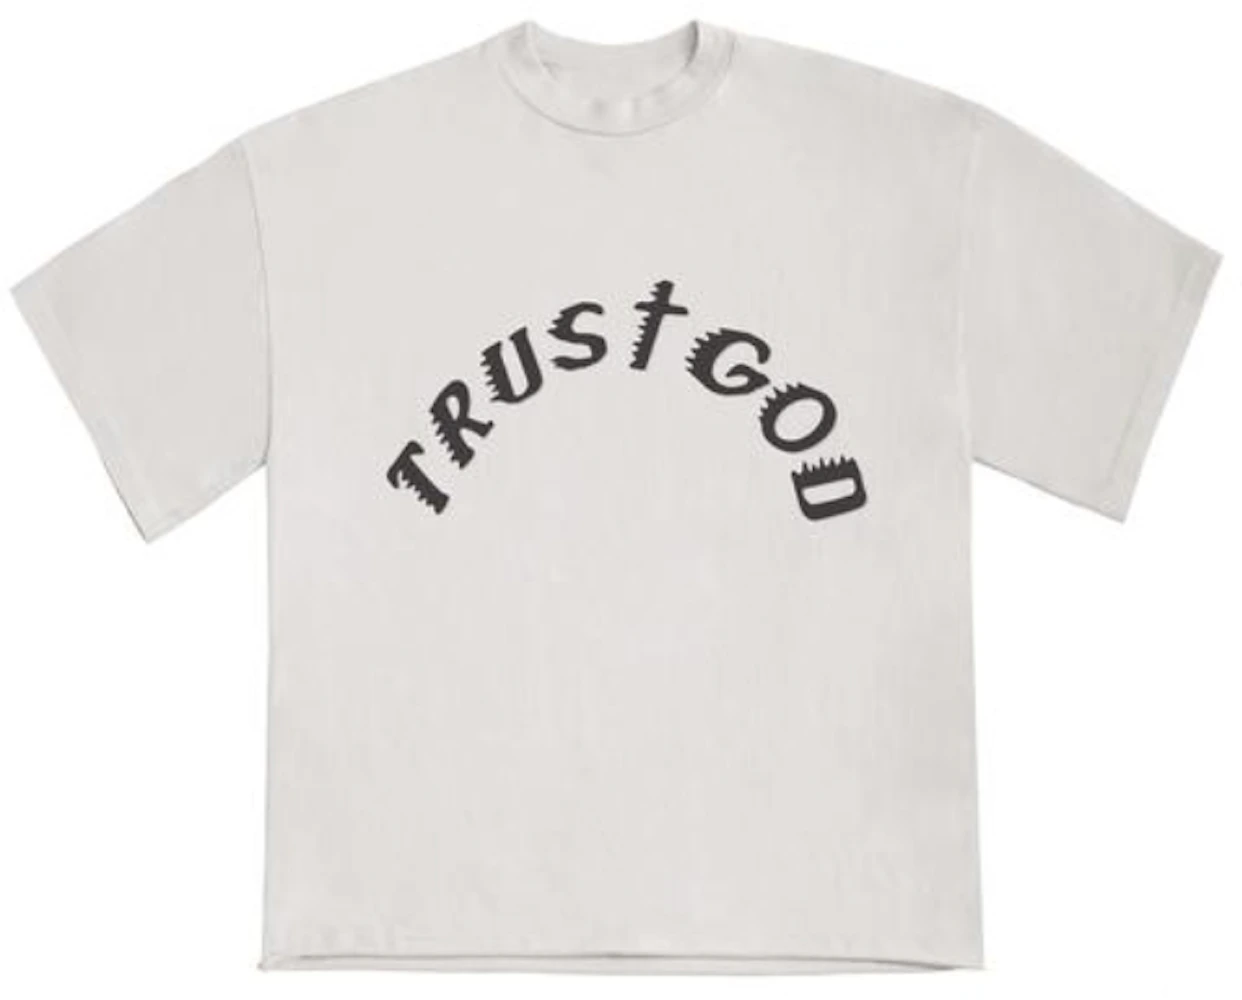 KANYE WEST Official Trust God T-Shirt XL iveyartistry.com